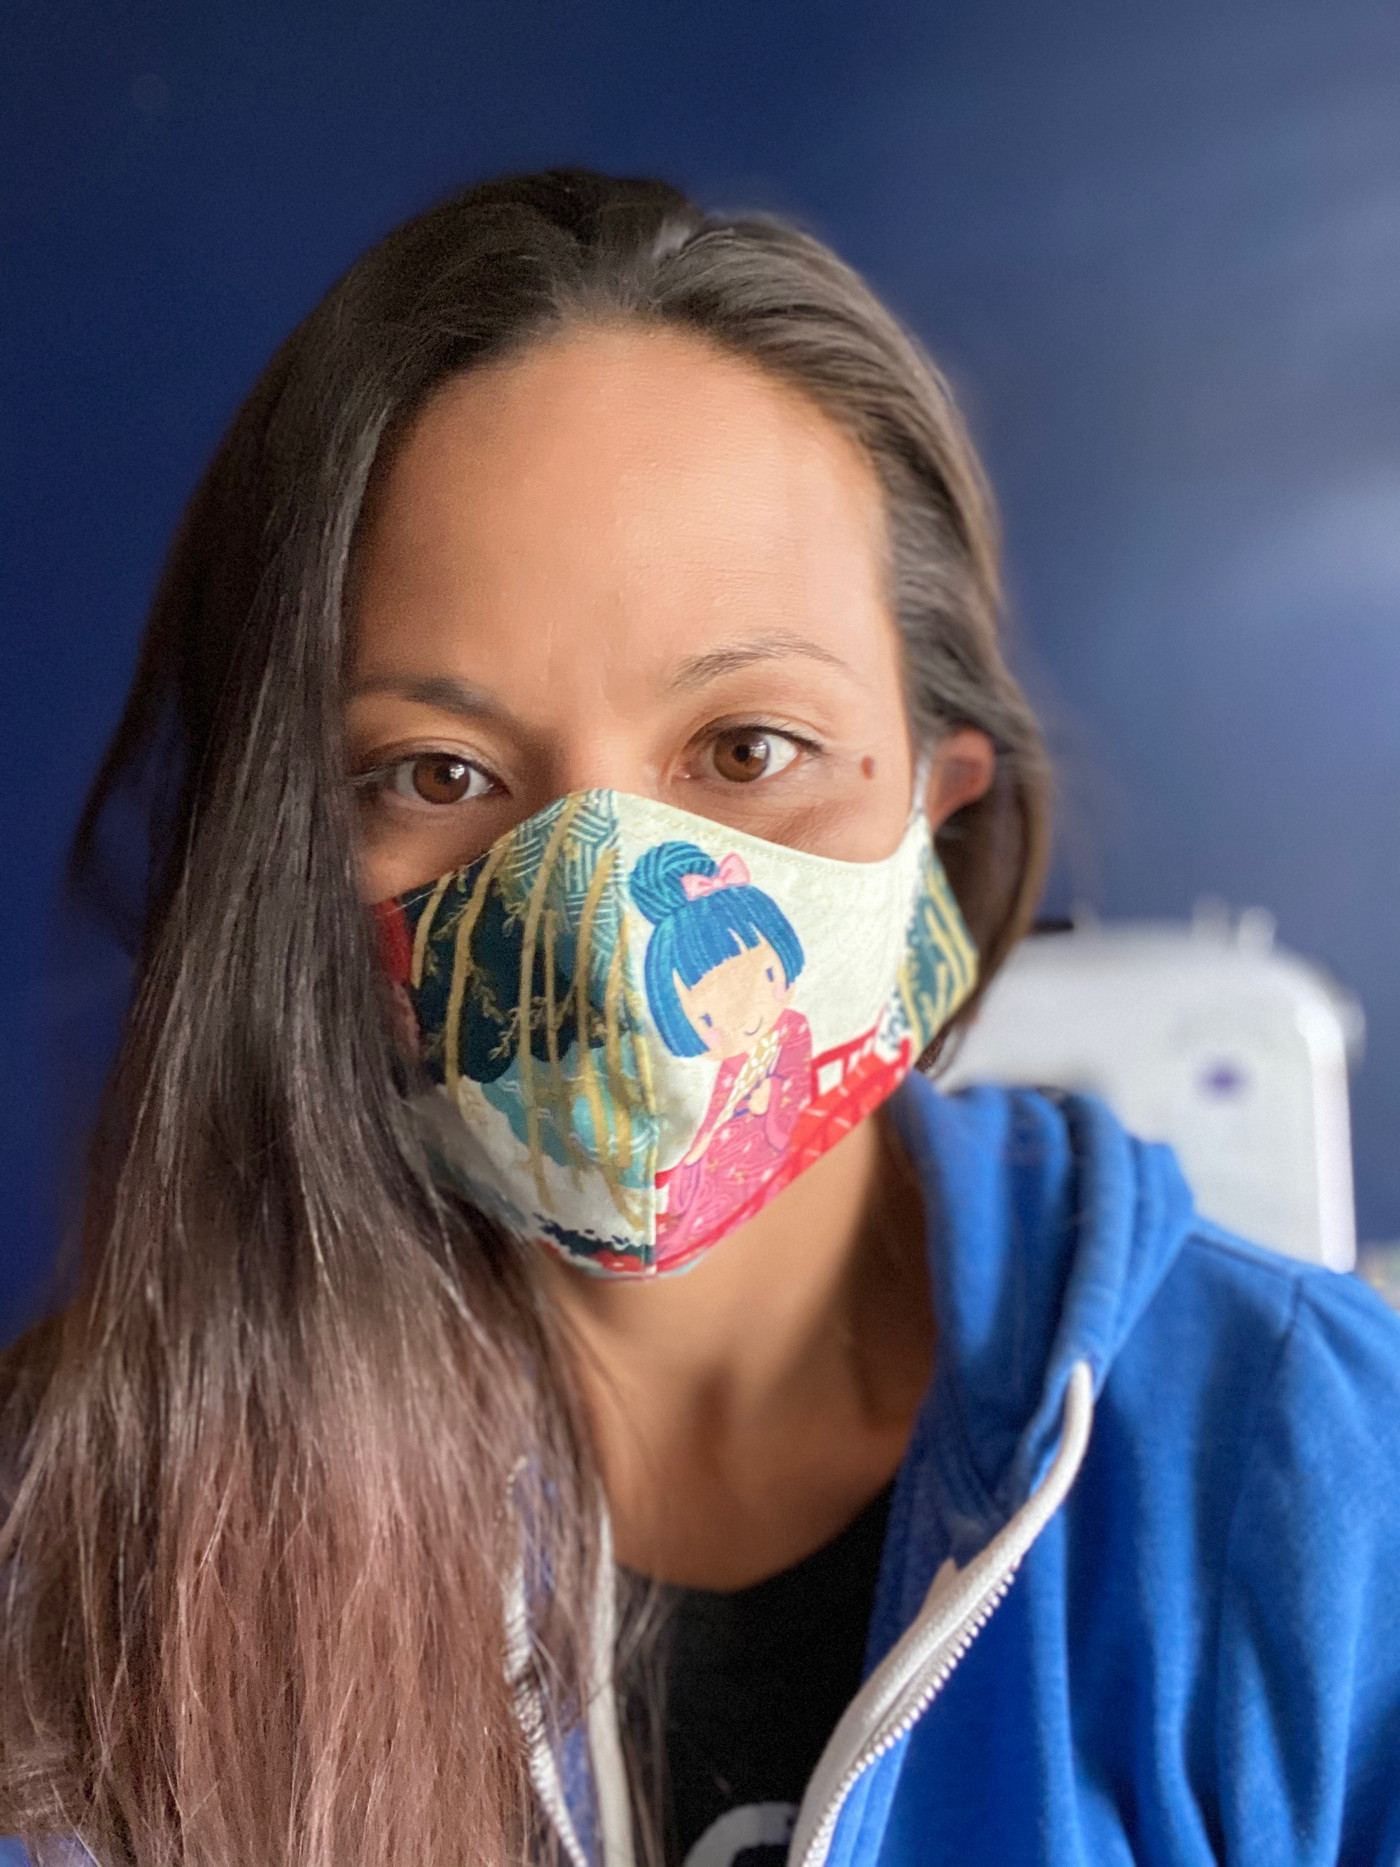 Homemade Face Masks Vox Readers Created For Coronavirus Vox